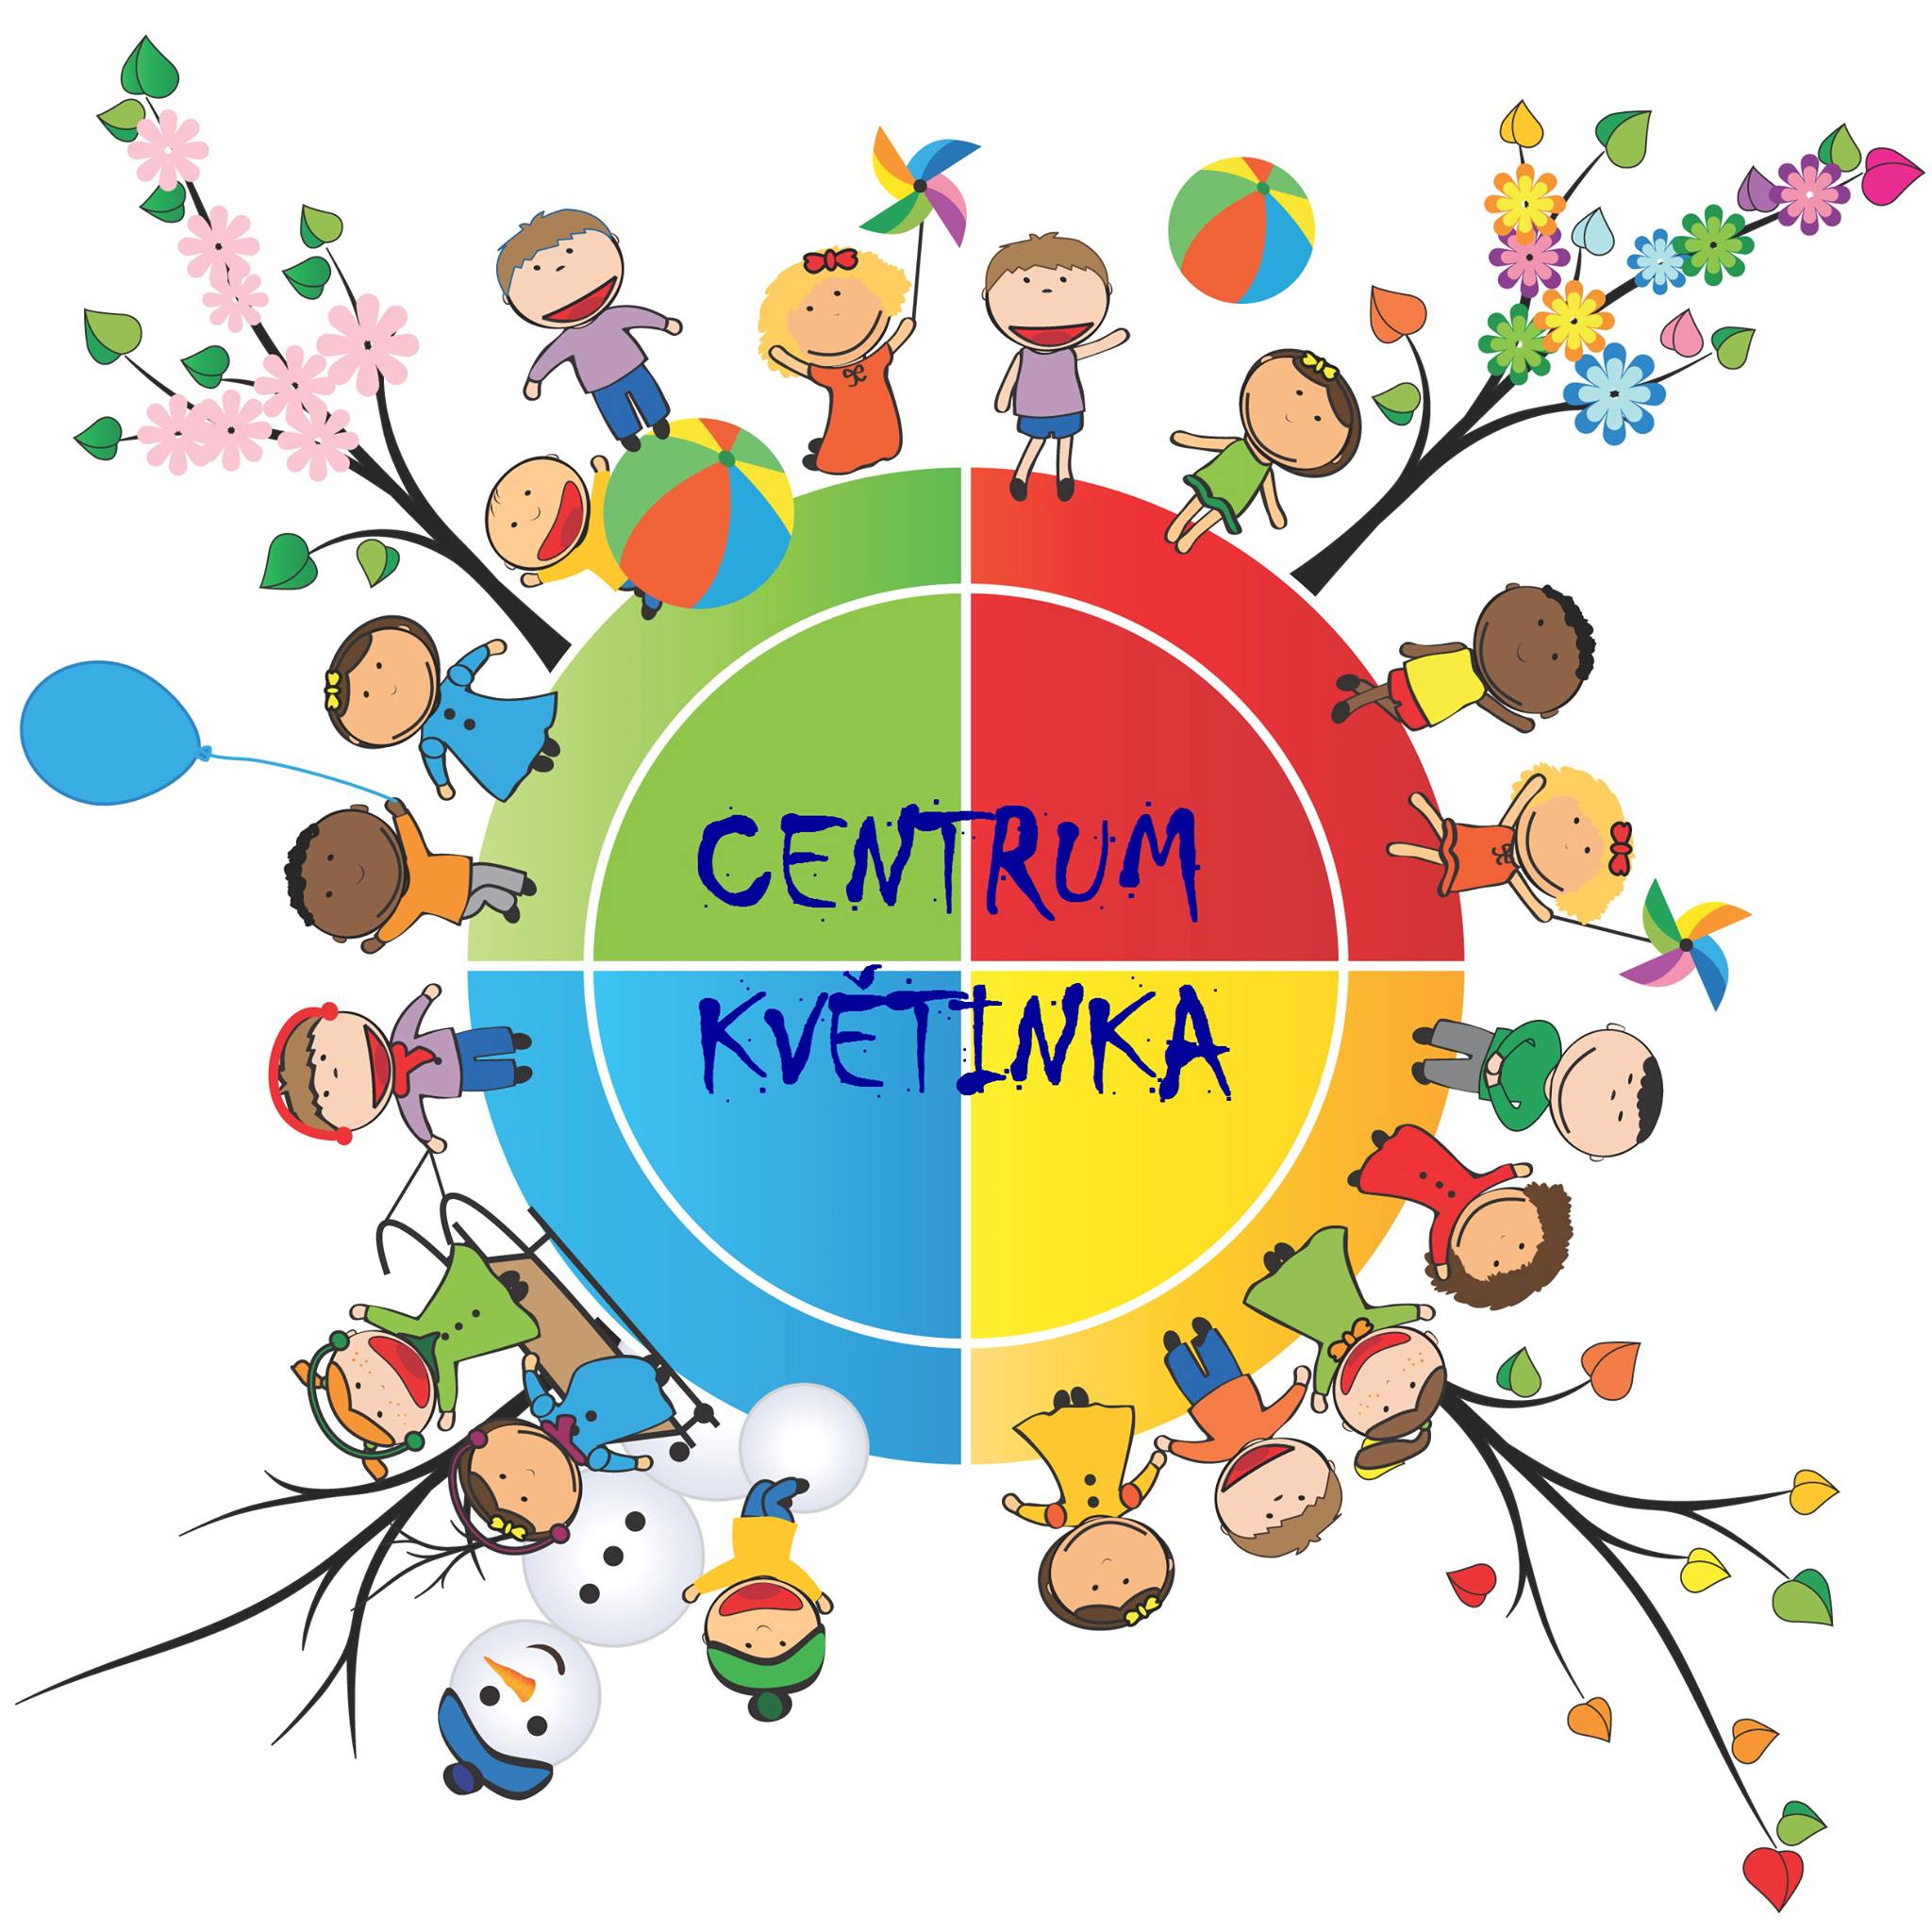 Centrum Kvetinka logo